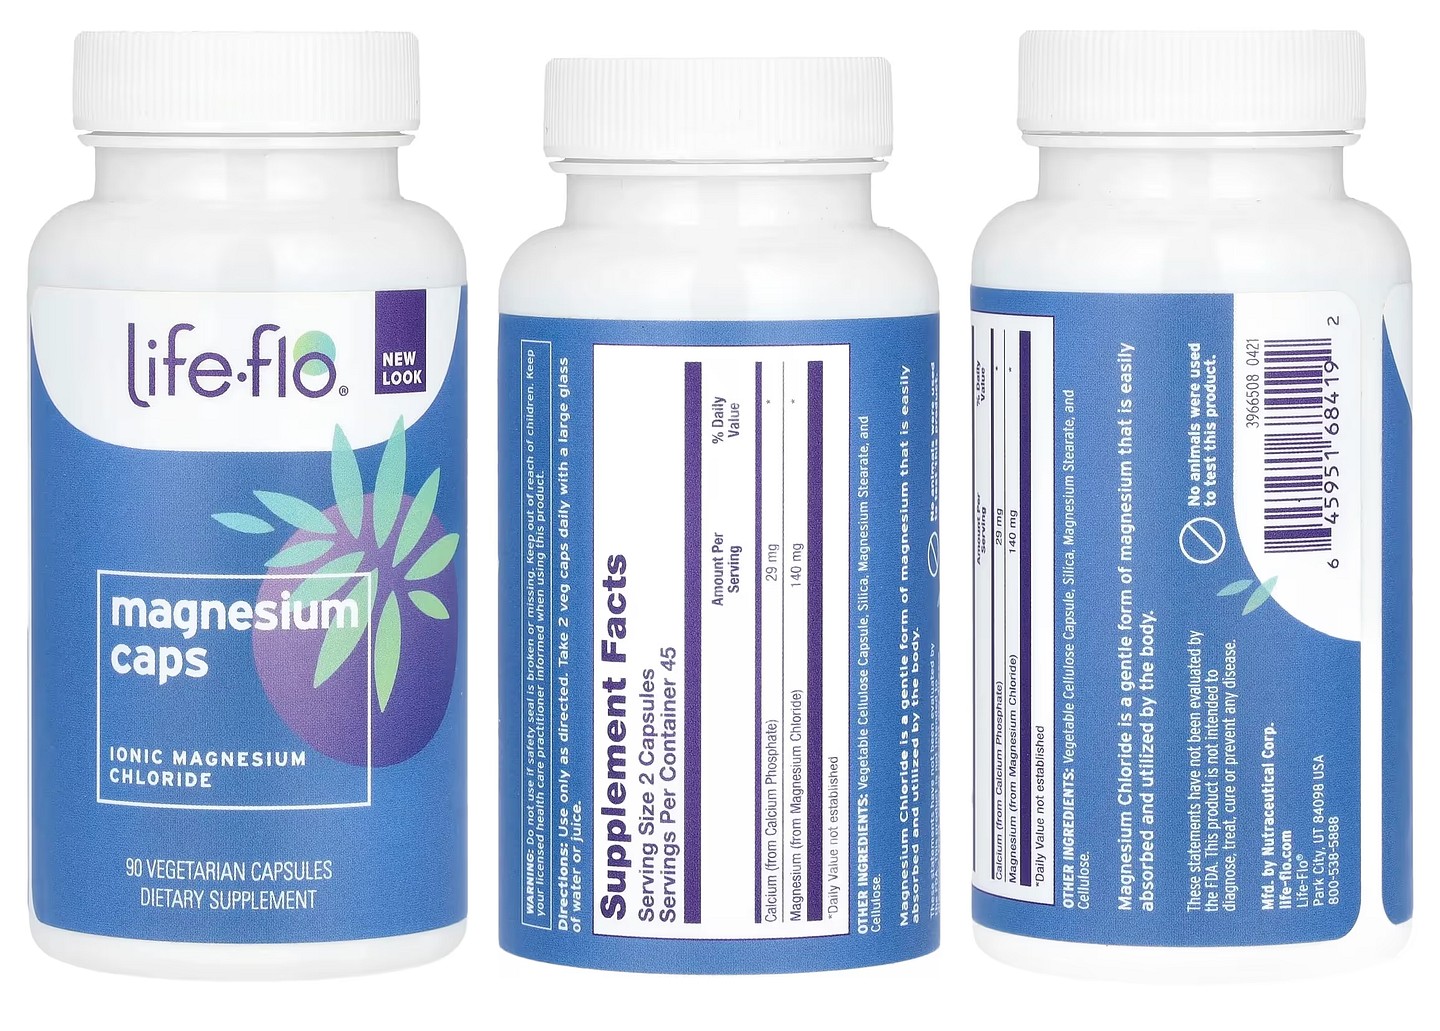 Life-flo, Magnesium Caps packaging